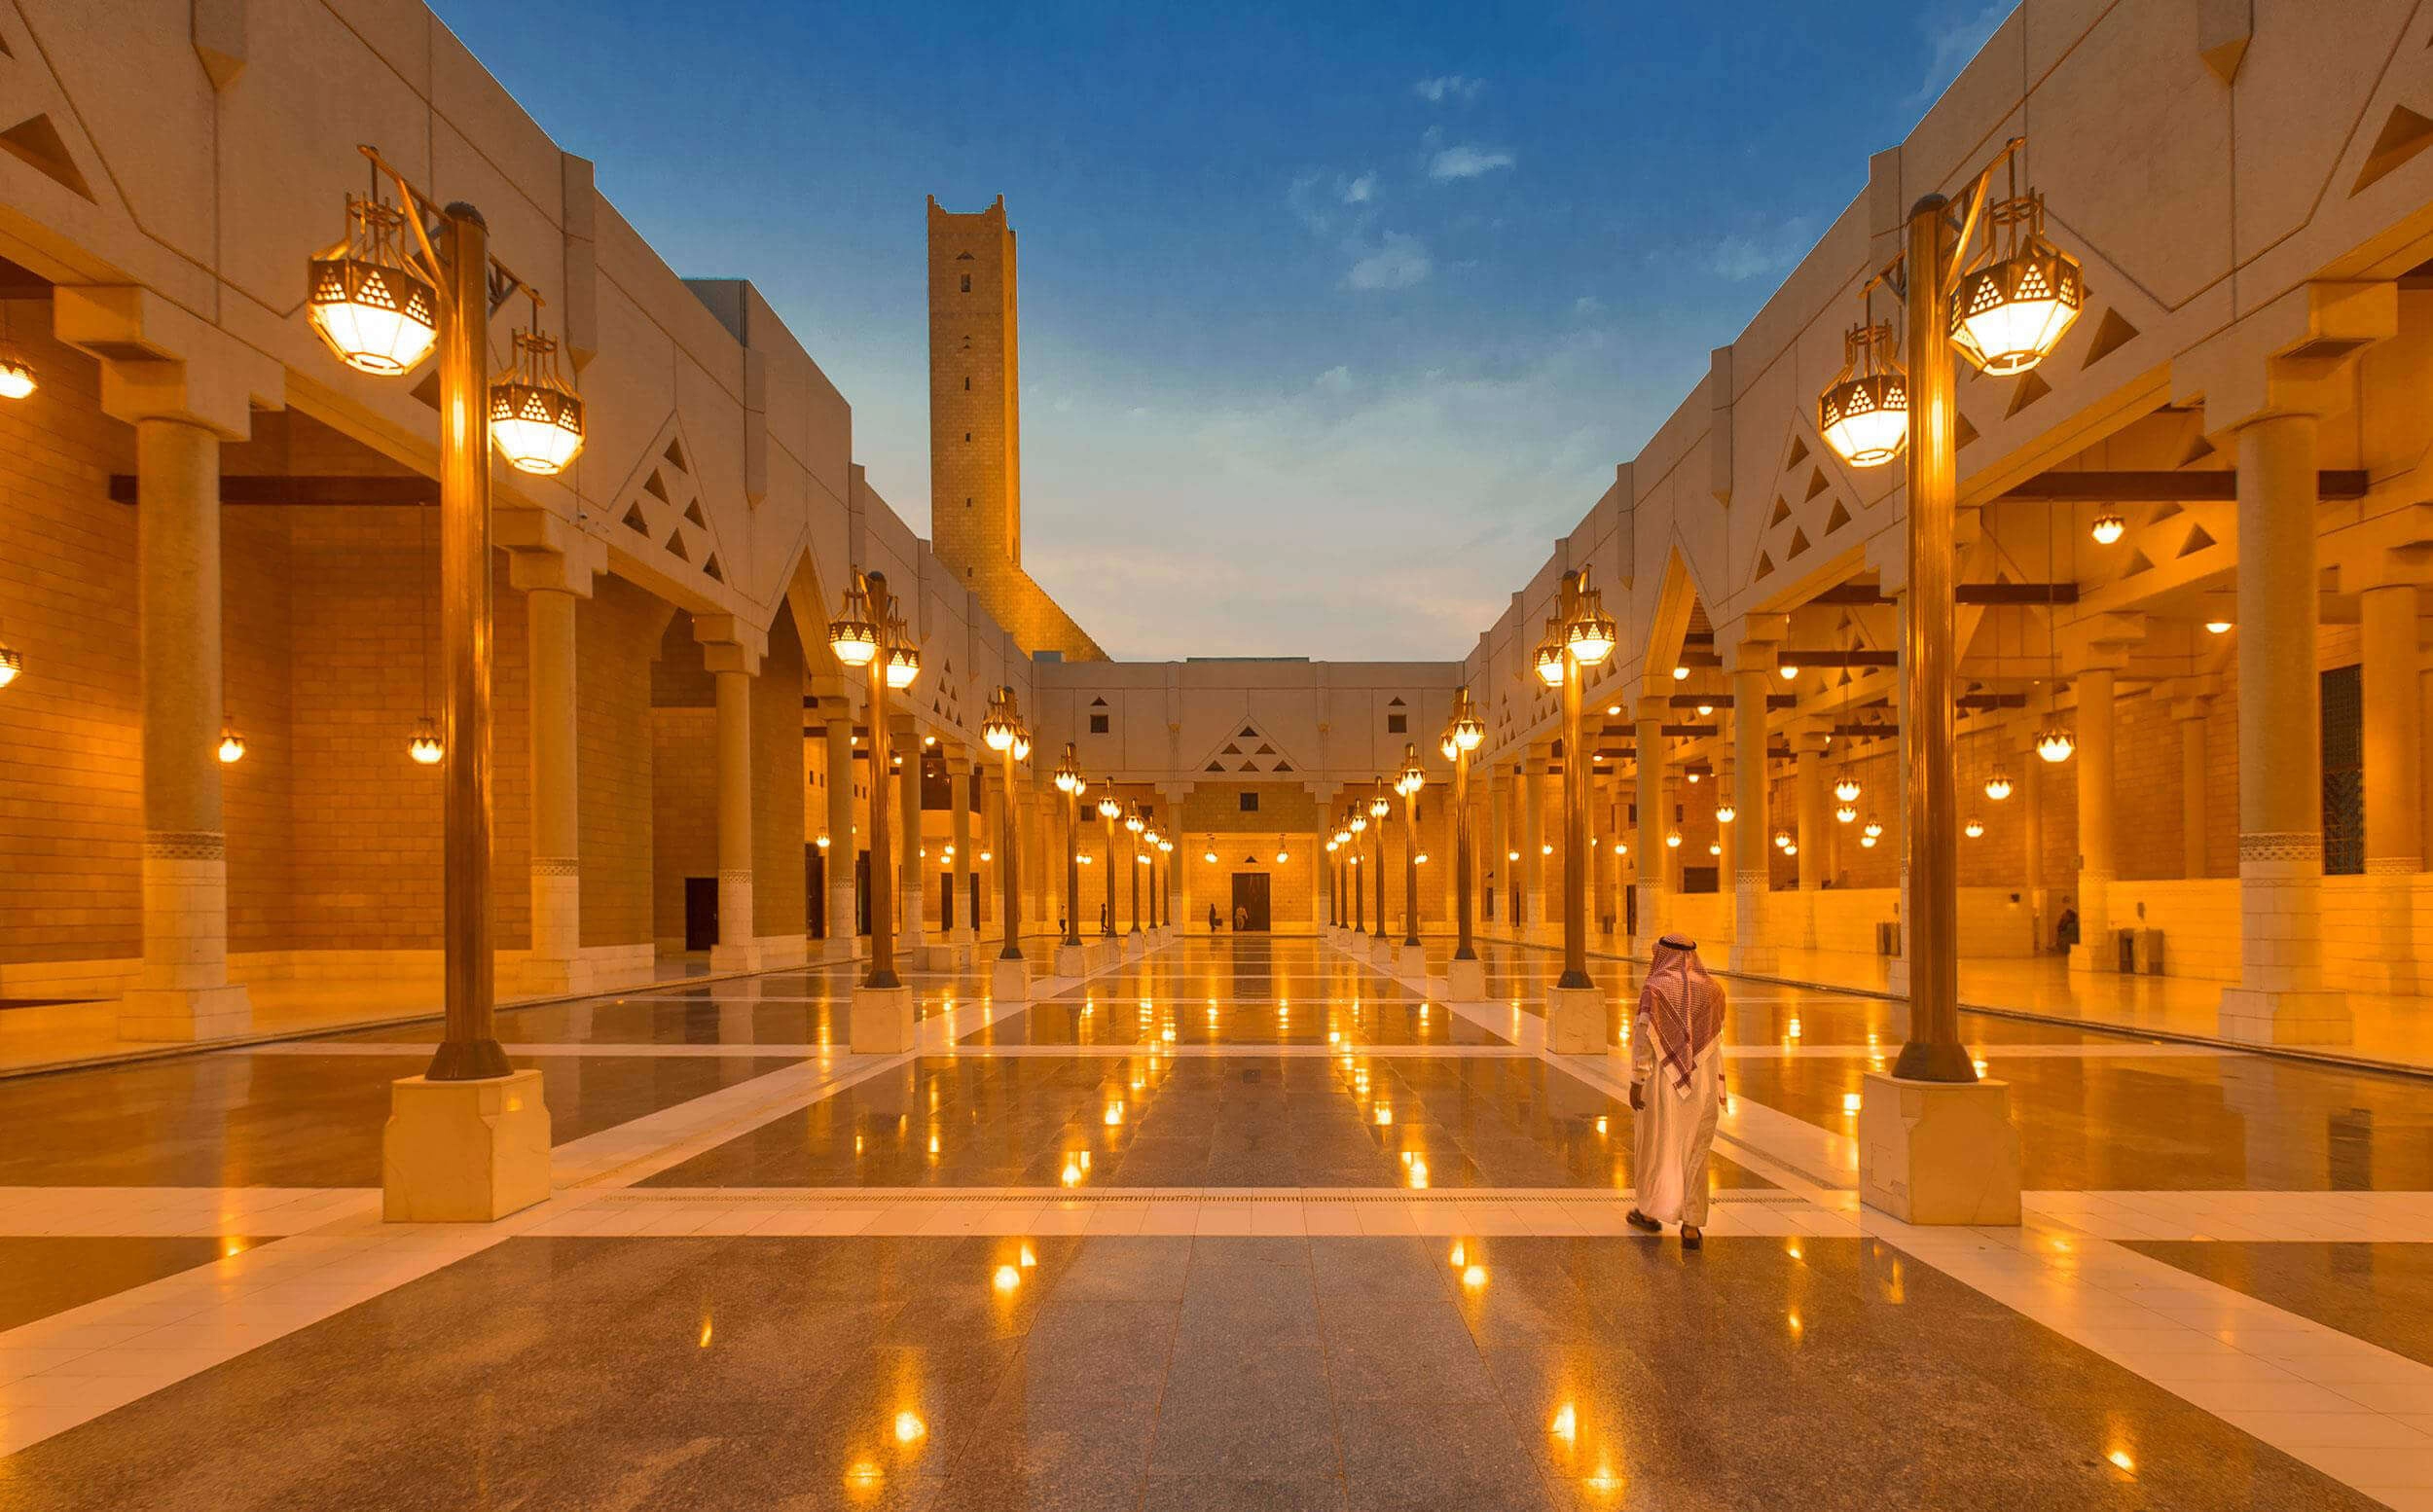 جامع الإمام تركي بن عبدالله